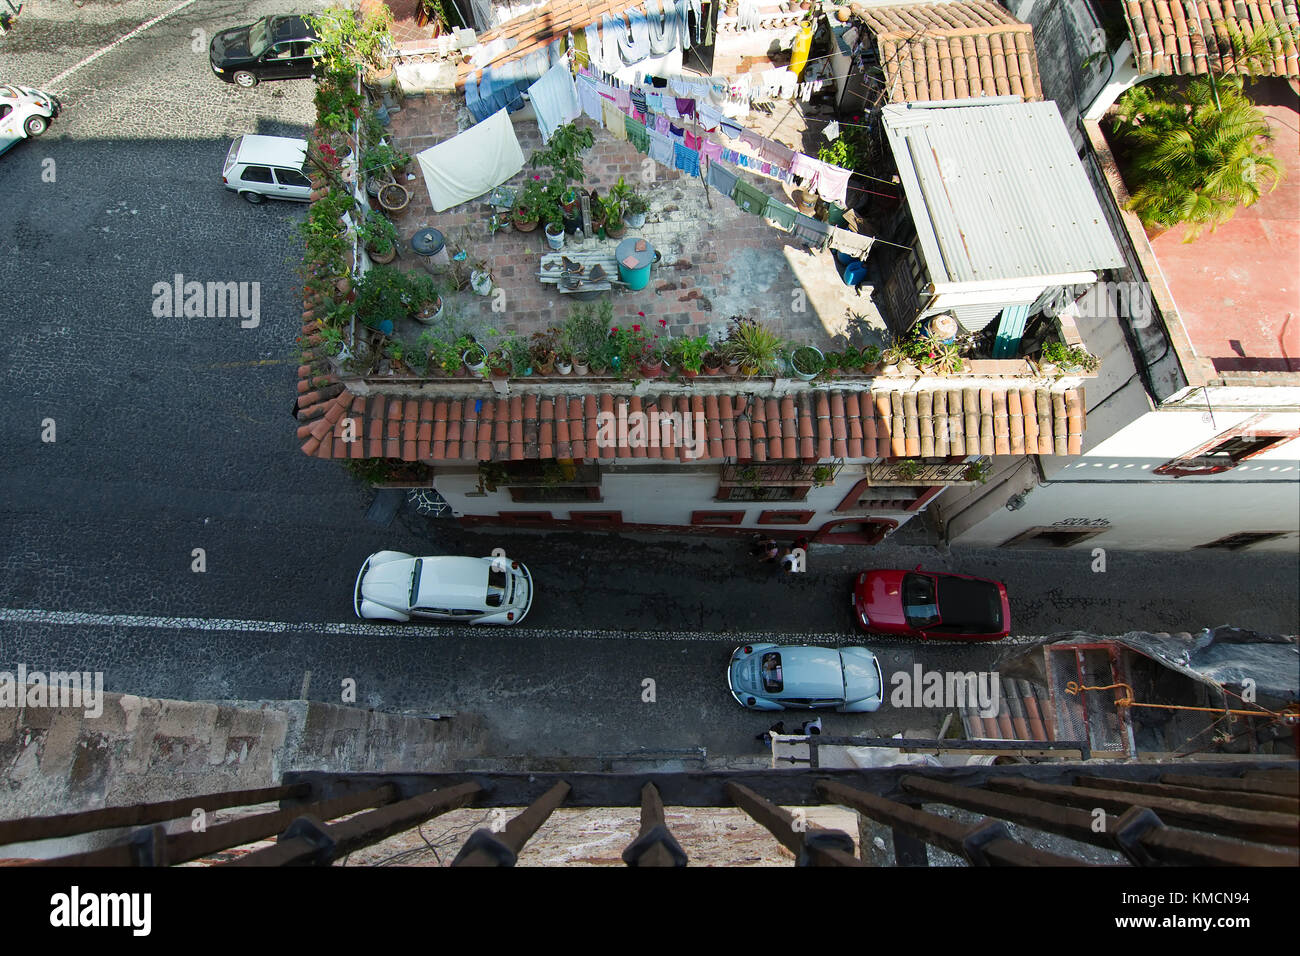 Taxco, Guerrero, Mexique - 2017 : une vue typique de la ville, aux rues pavées et maisons blanches et rouges avec des toits de tuile Banque D'Images